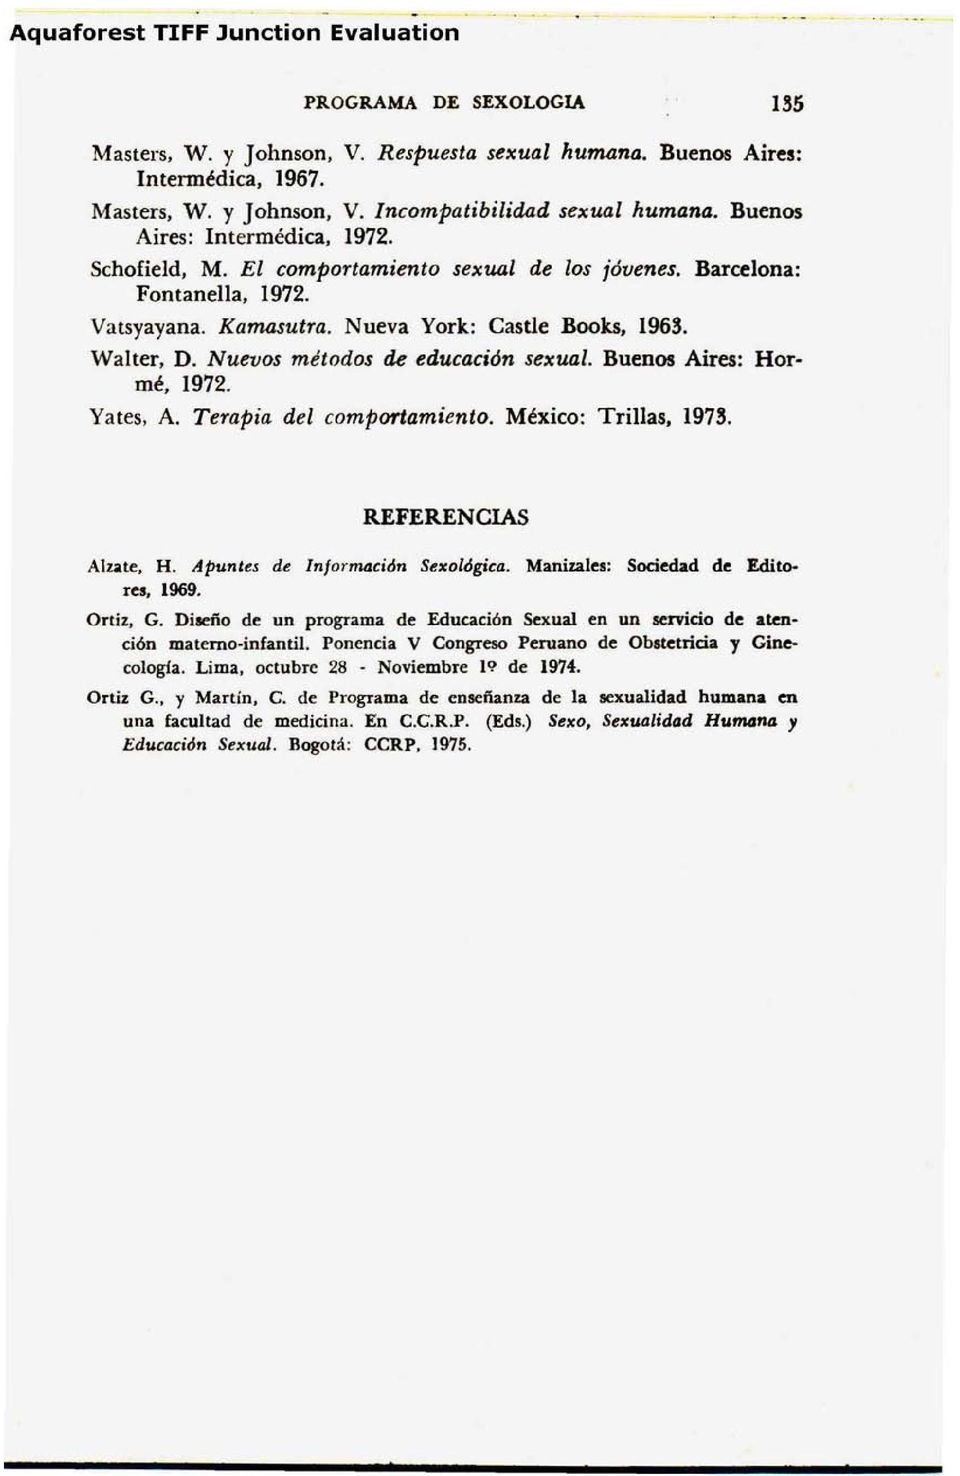 Buenos Aires: Hormé, 1972. Yates, A. Terapia del comportamiento. México: Trillas, 1973. REFERENCIAS Alzate, H. Apuntes de Información Sexológica. Manizales: Sociedad de Editores, 1969. Ortiz, G.